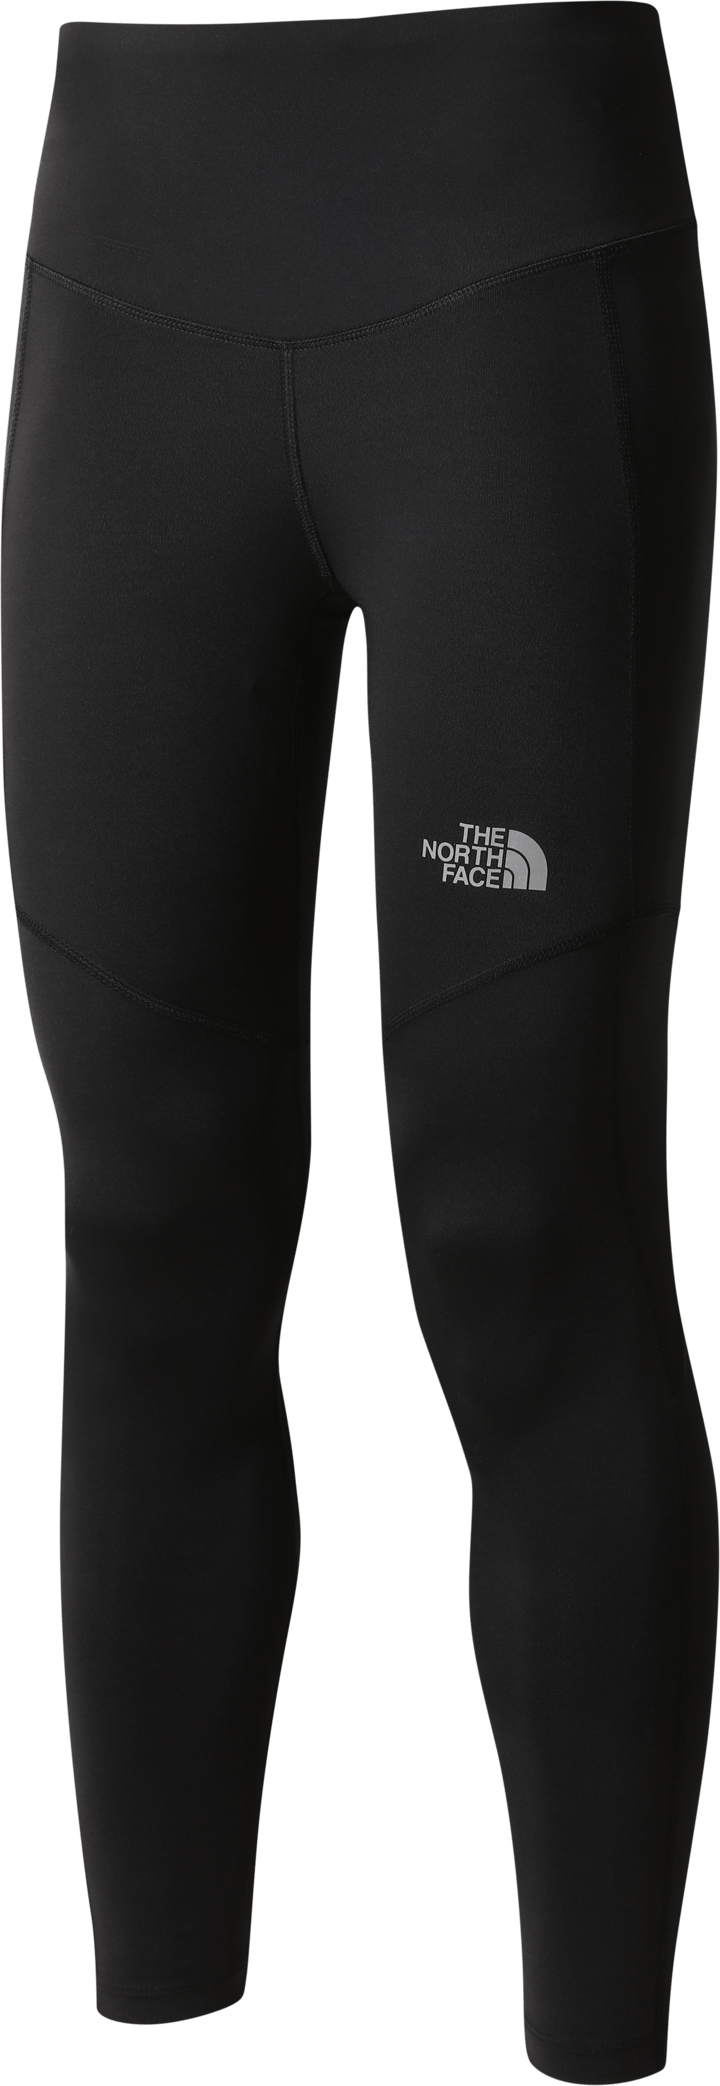 Women's Winter Warm Pro Leggings TNF BLACK, Buy Women's Winter Warm Pro  Leggings TNF BLACK here